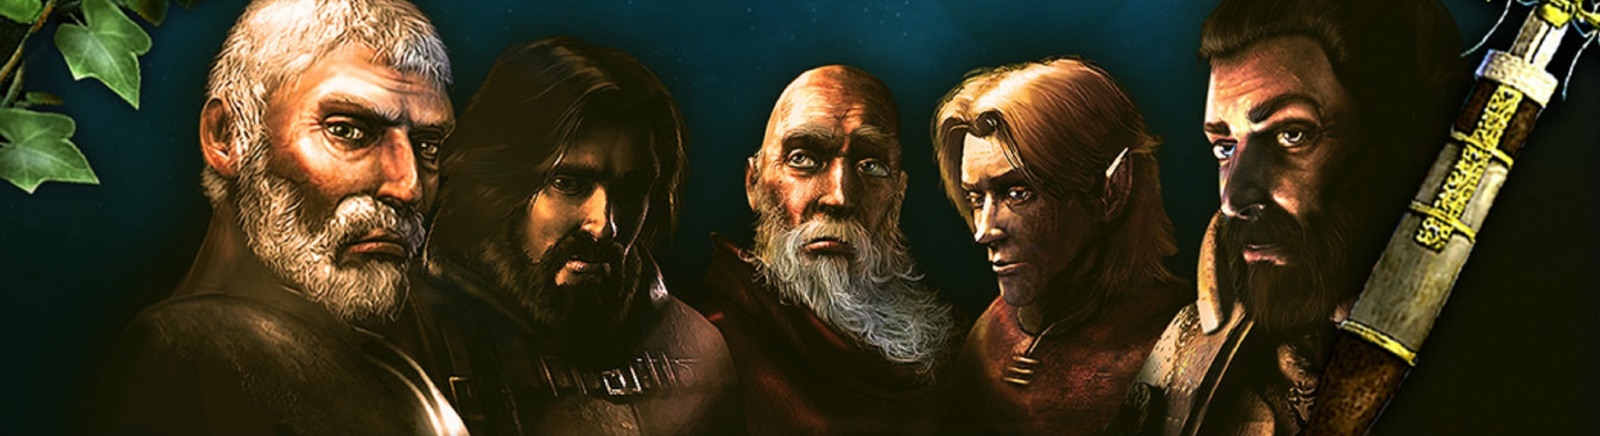 Дата выхода Siege of Avalon: Anthology (Осада Авалона: Антология)  на PC в России и во всем мире